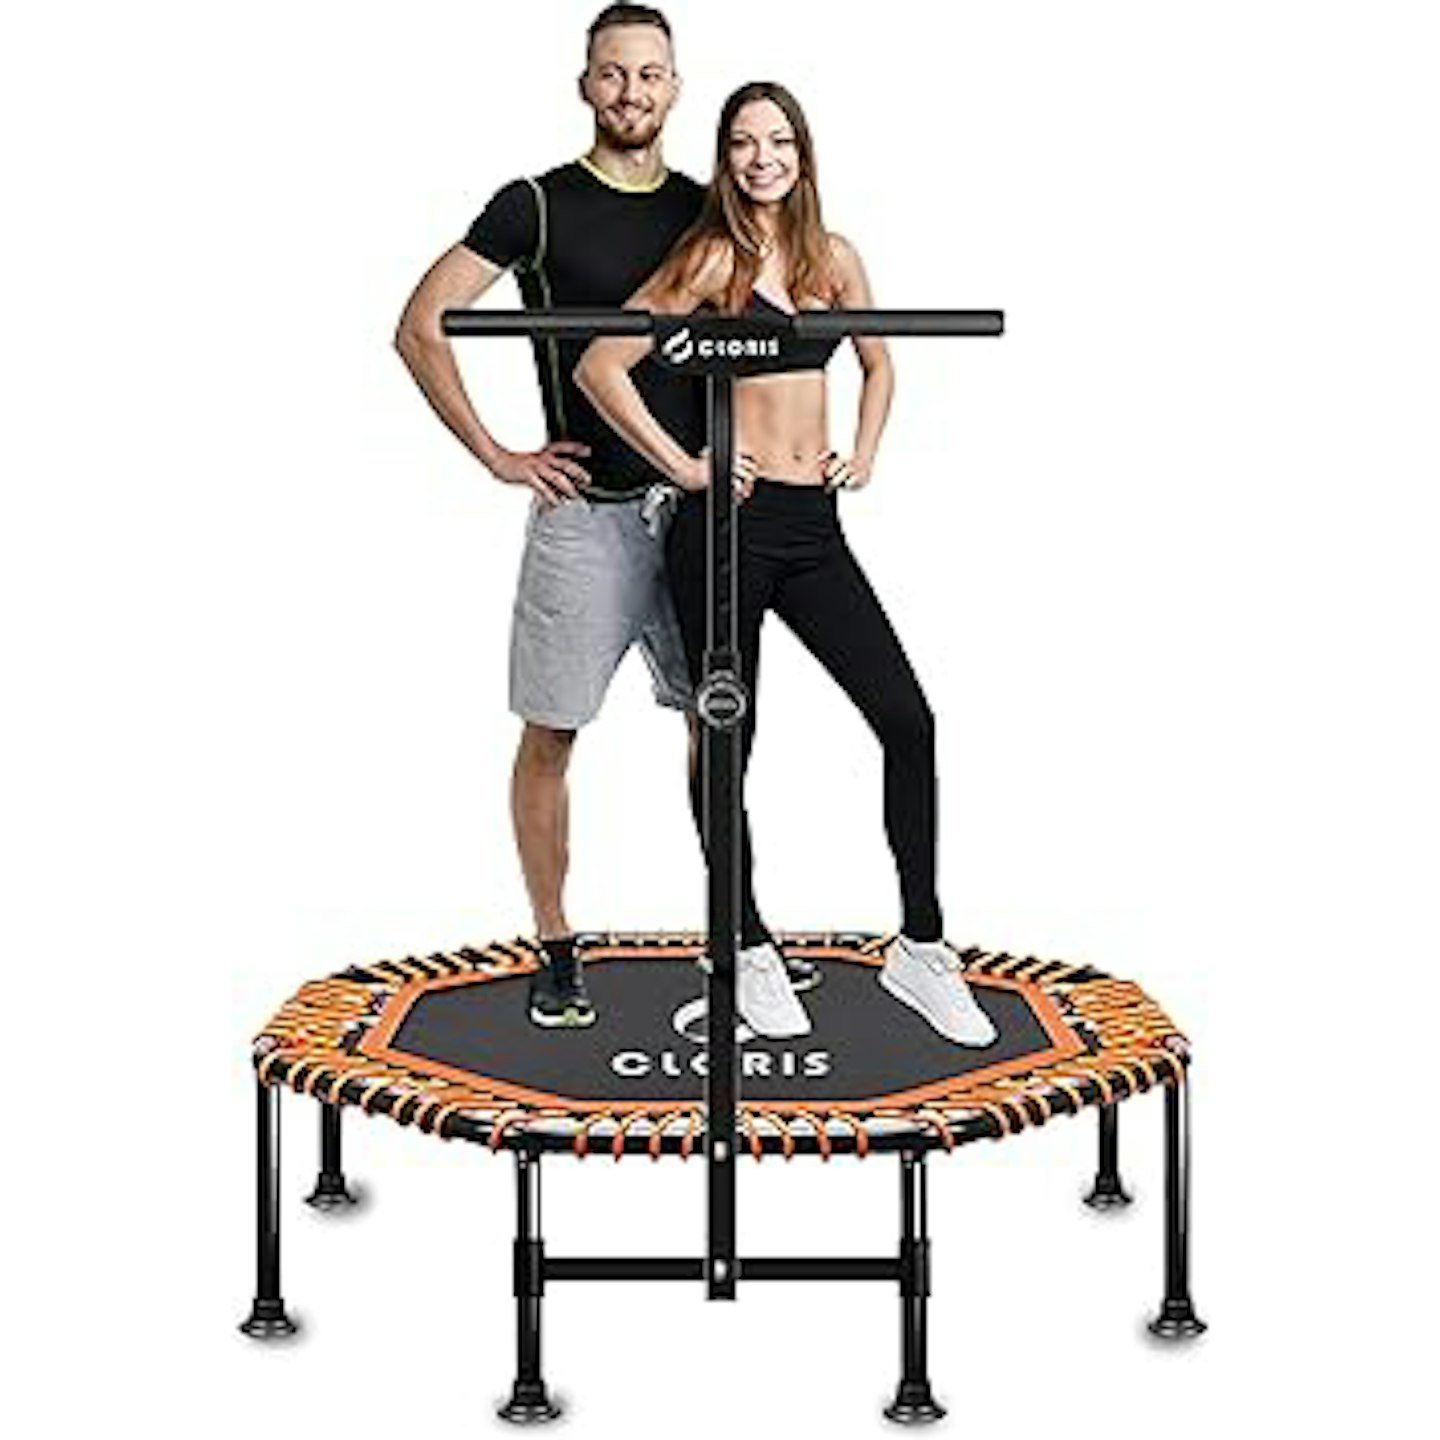 CLORIS exercise trampoline